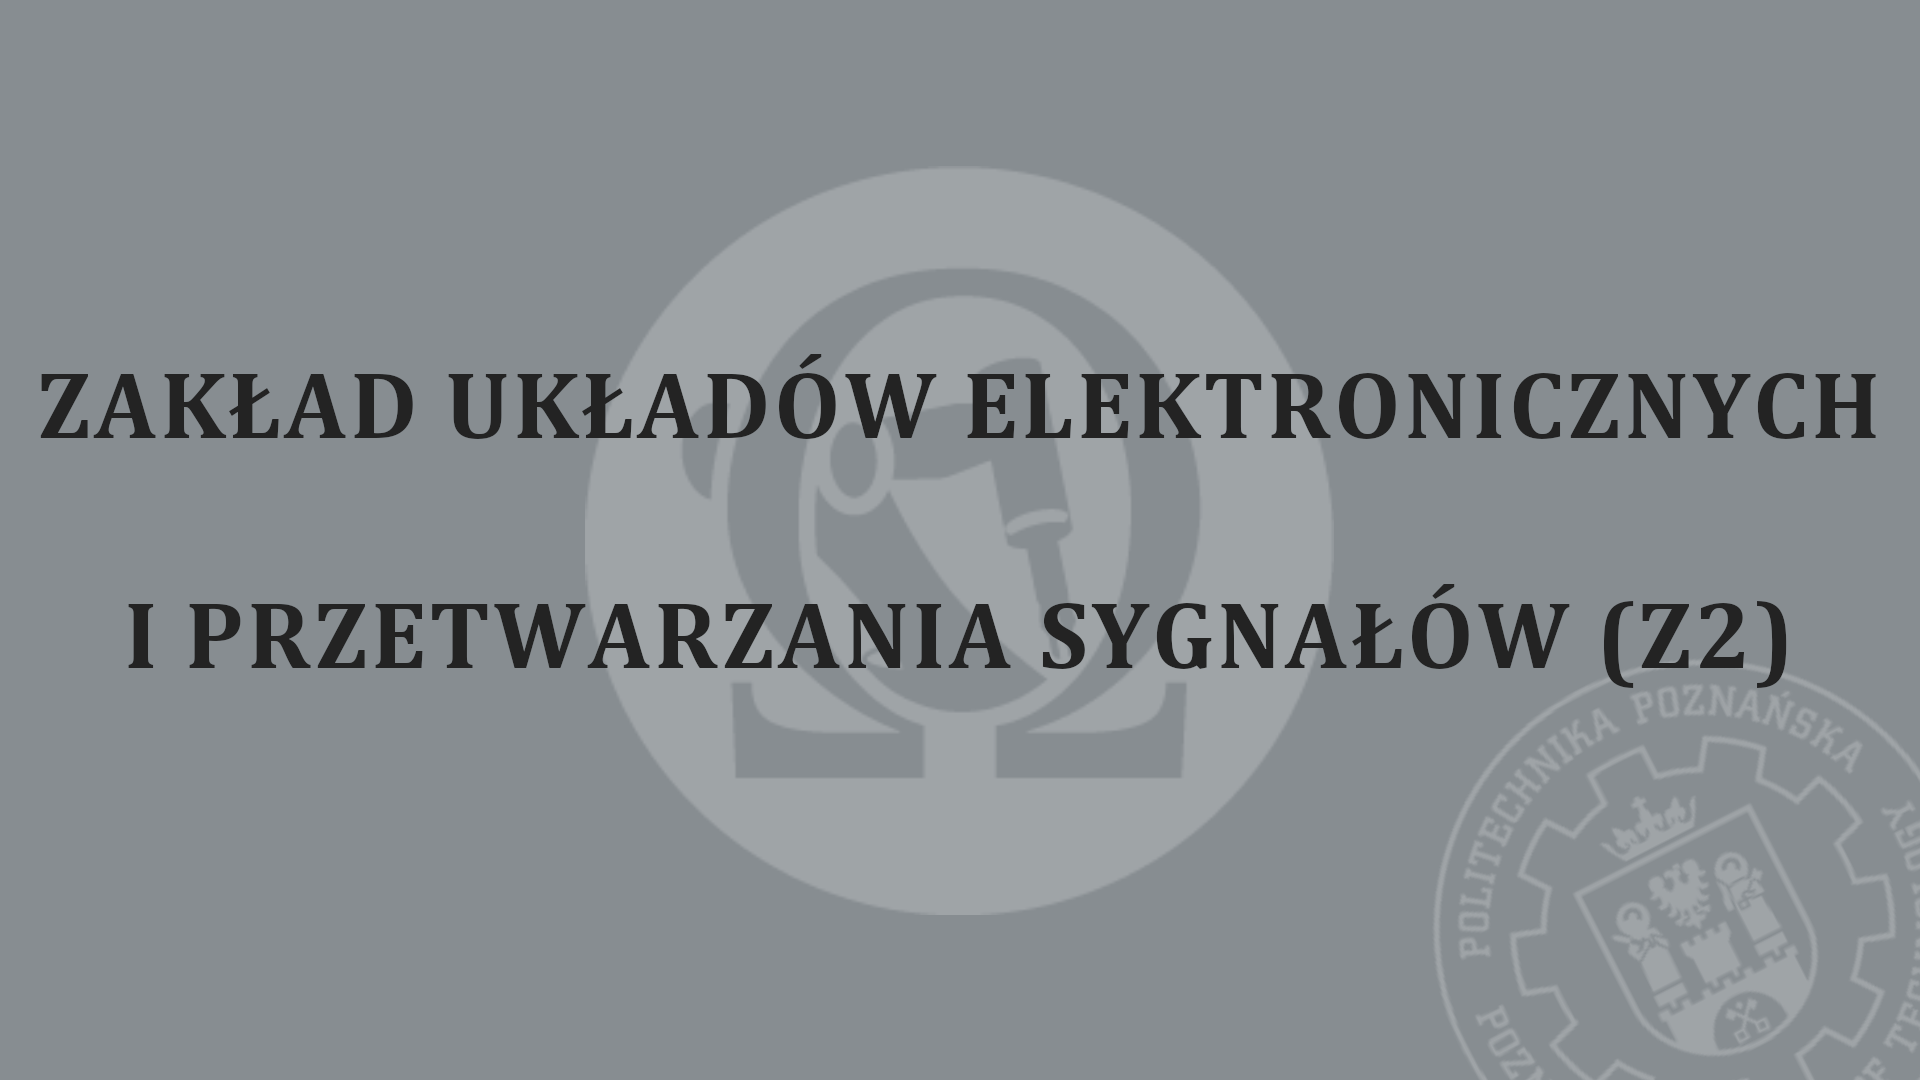 Zakład Układów Elektronicznych i Przetwarzania Sygnału (z2)